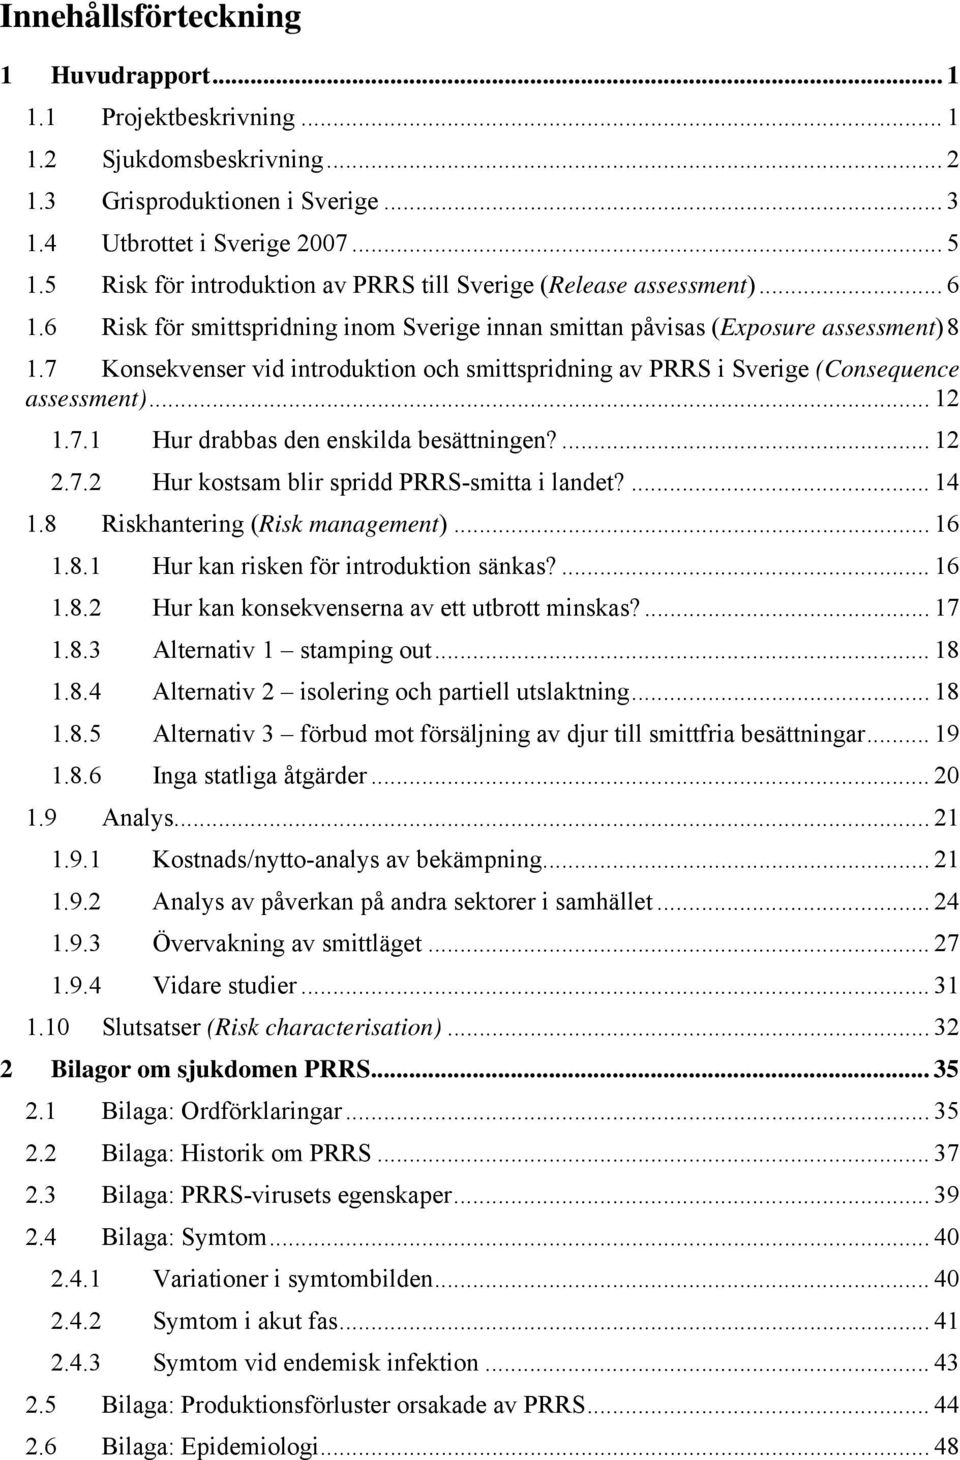 7 Konsekvenser vid introduktion och smittspridning av PRRS i Sverige (Consequence assessment)... 12 1.7.1 Hur drabbas den enskilda besättningen?... 12 2.7.2 Hur kostsam blir spridd PRRS-smitta i landet?